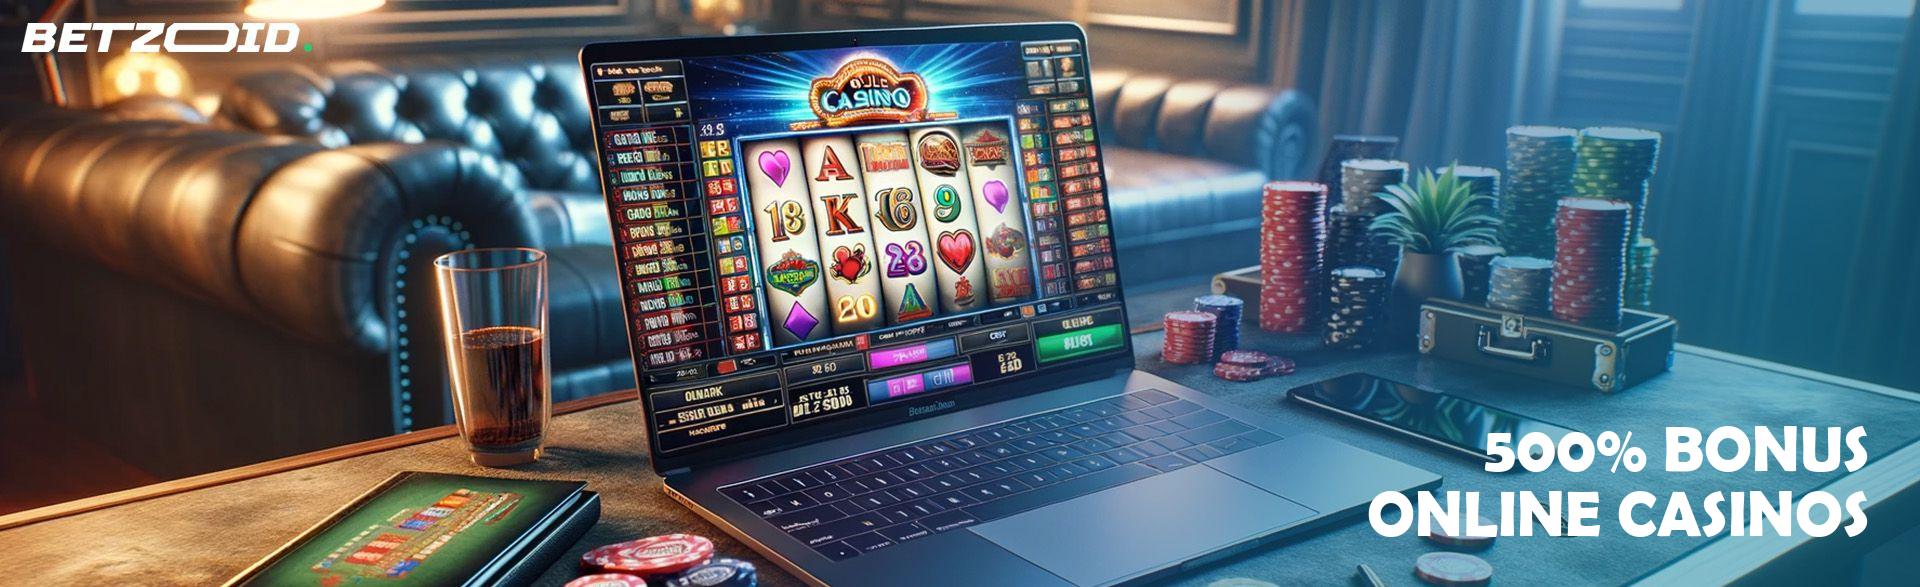 500% Bonus Online Casinos.